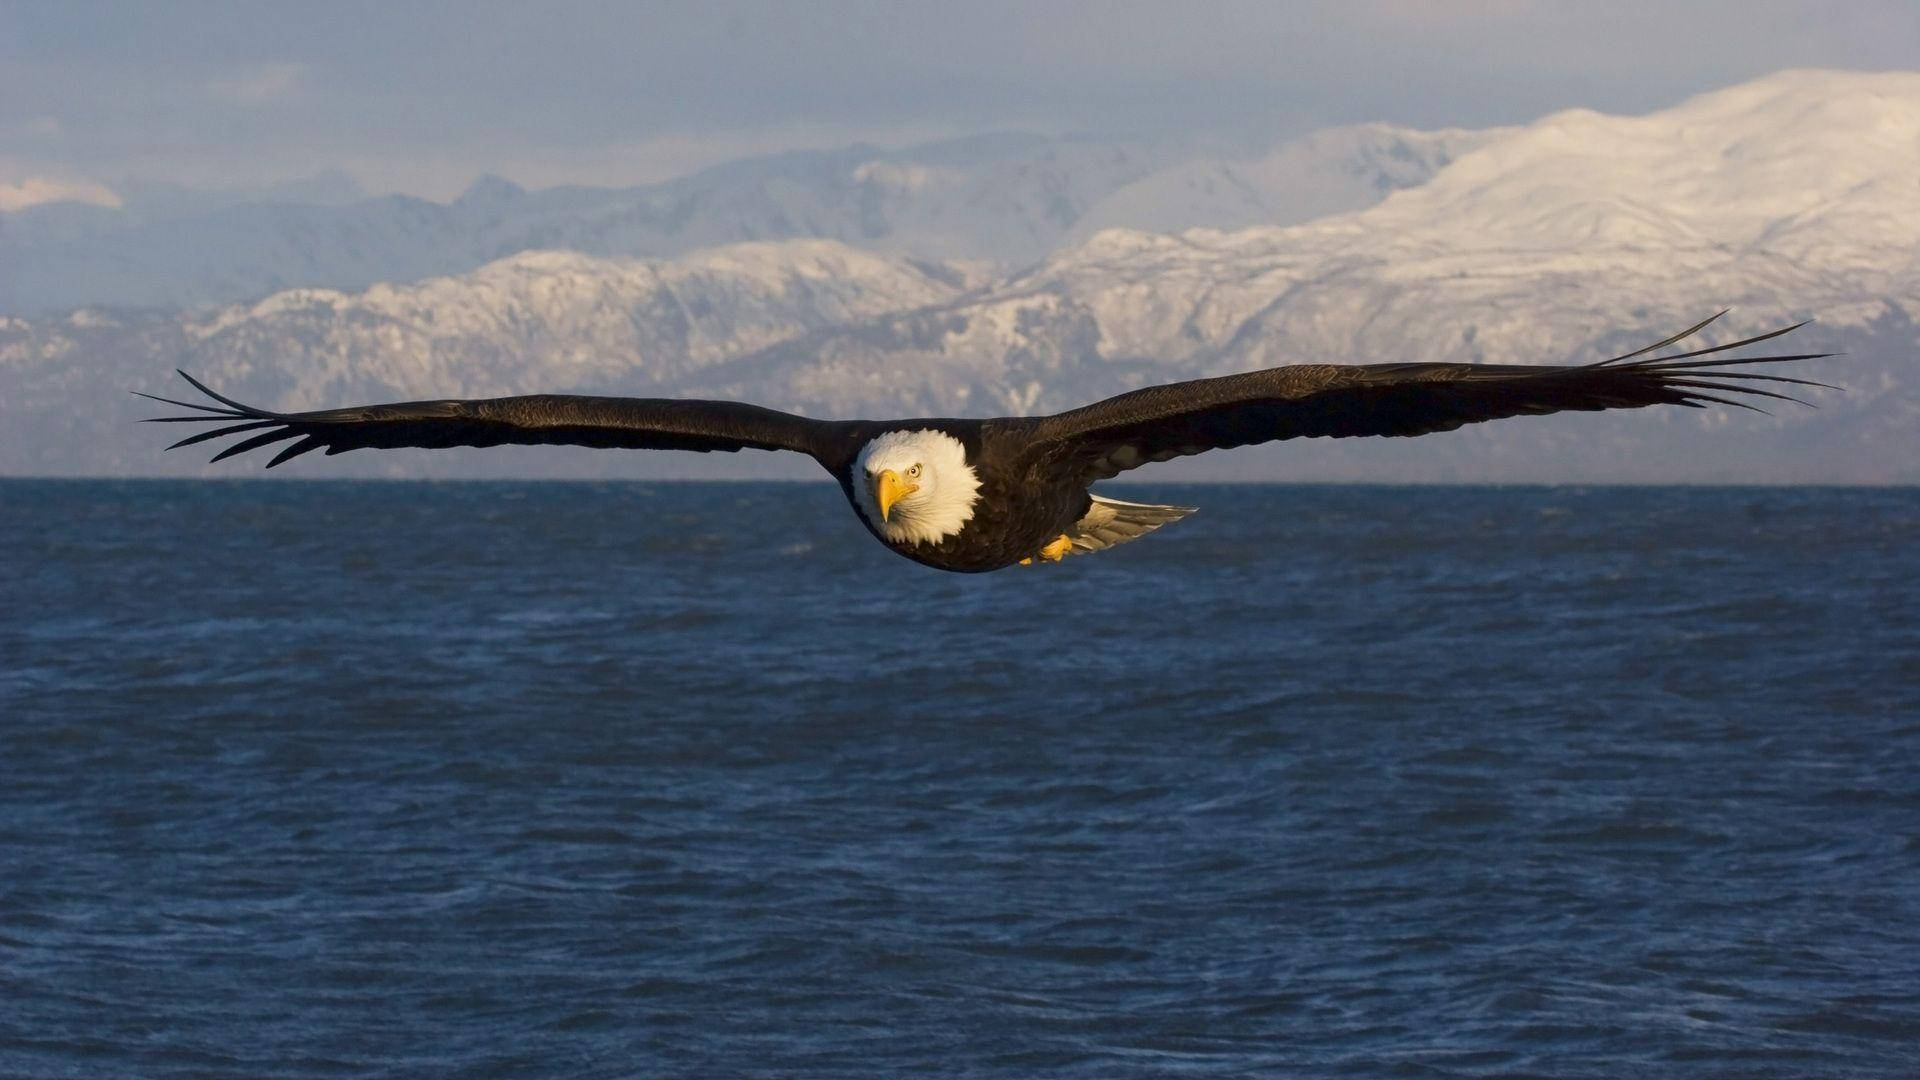 Bald Eagle In Flight Over The Ocean Wallpaper